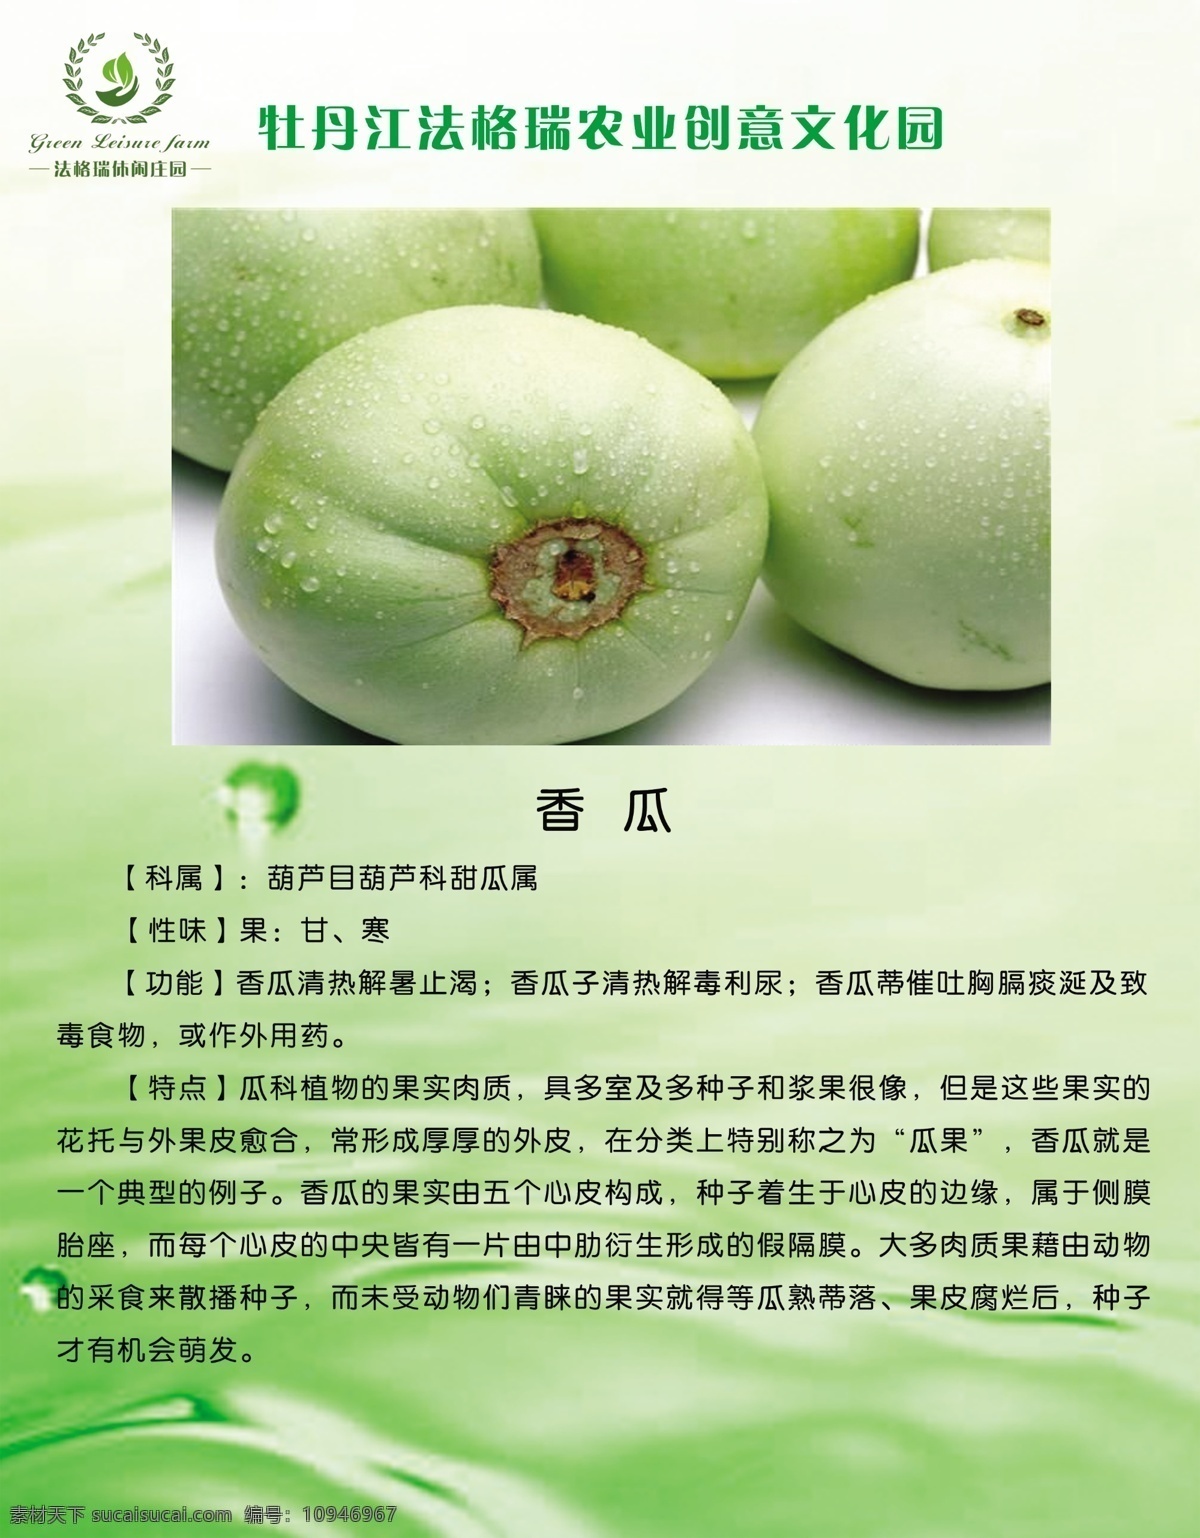 果蔬介绍 香瓜 农业 农业知识 展板 绿色 水滴 生态 展板模板